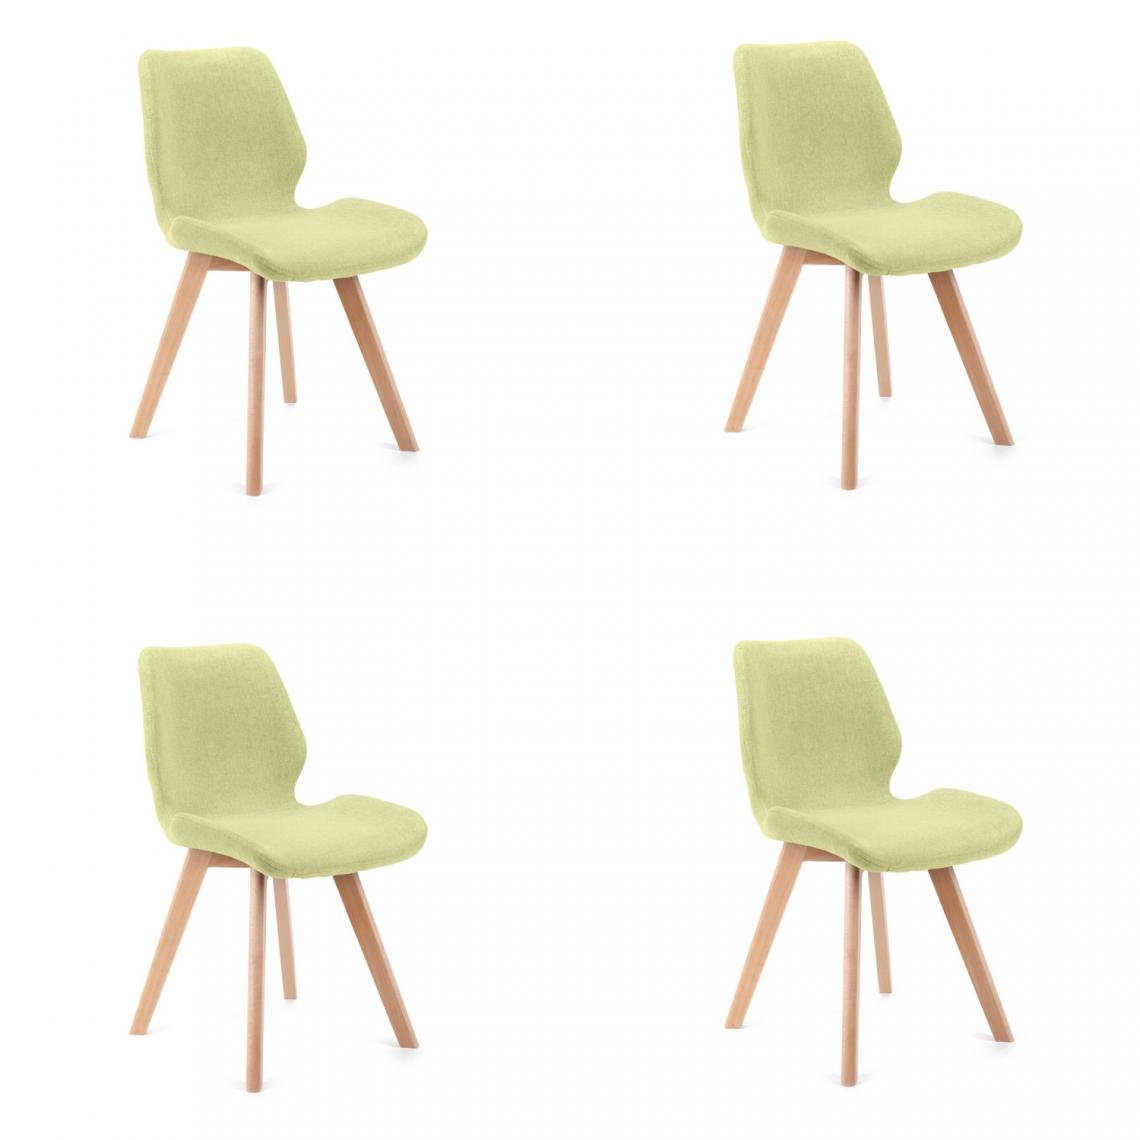 Hucoco - BROLI - Chaise rembourrée 4 pcs style moderne salon/salle à manger - 82.5x40x53 - Pieds en bois - Vert - Chaises